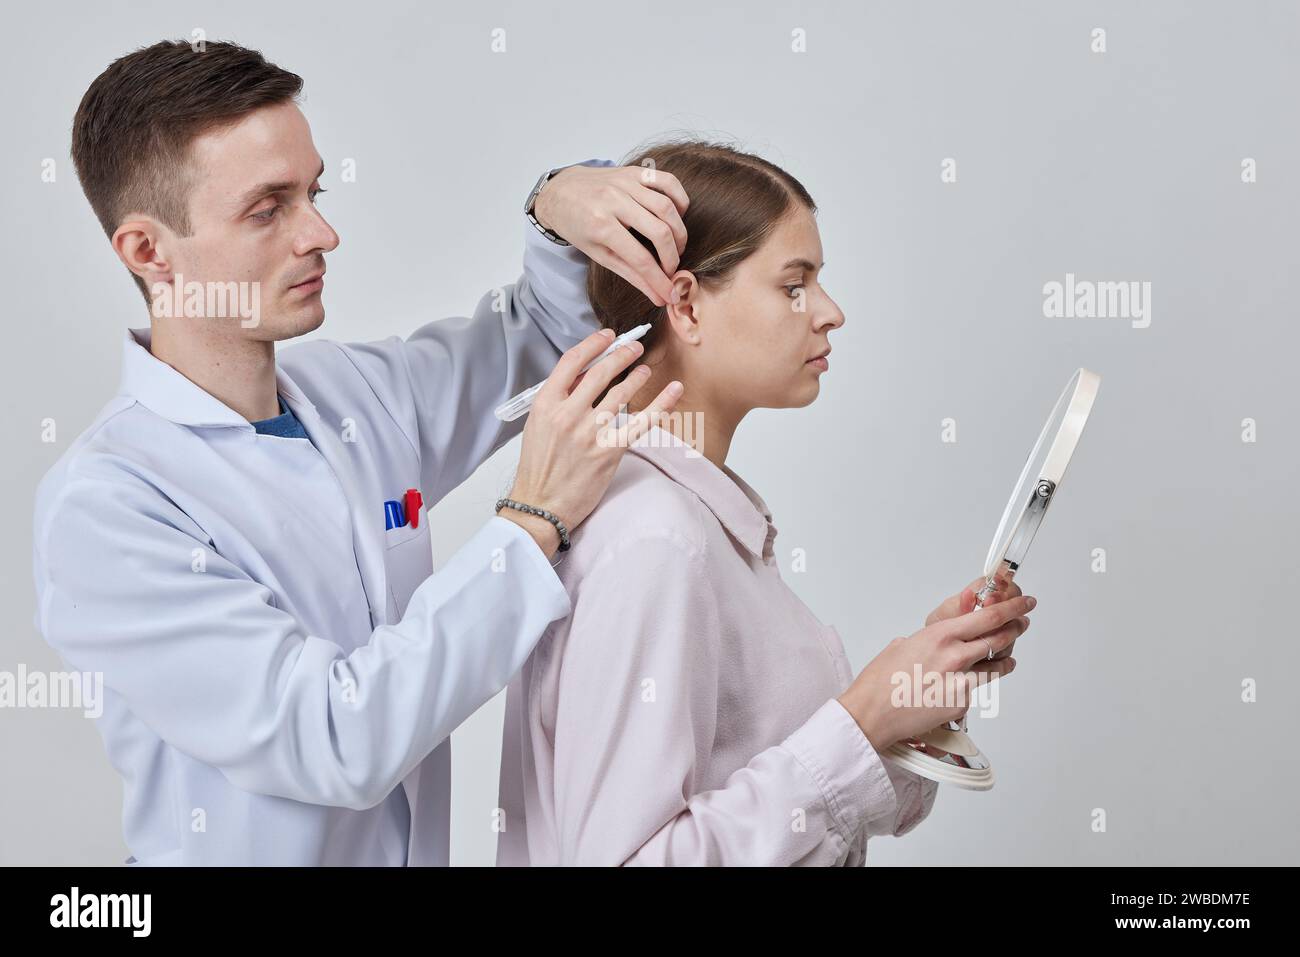 Marcatore di otoplastica per rimodellare chirurgicamente la pinna o orecchio esterno per correggere un'irregolarità e migliorare l'aspetto. Contrassegno medico chirurgo gir Foto Stock